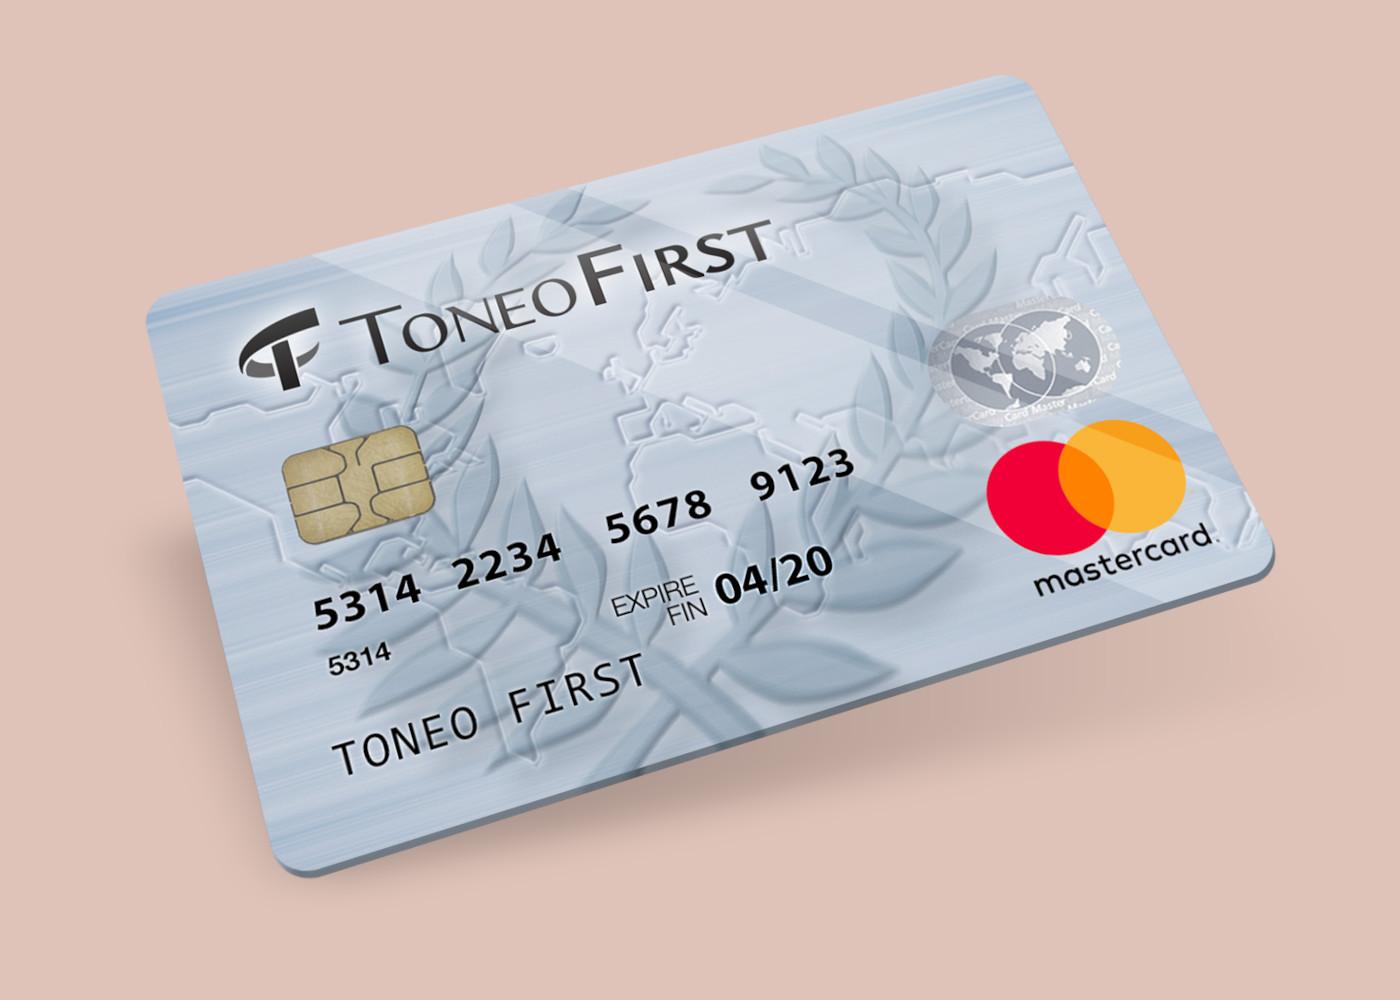 Toneo First Mastercard €15 Gift Card EU, 19.63 usd